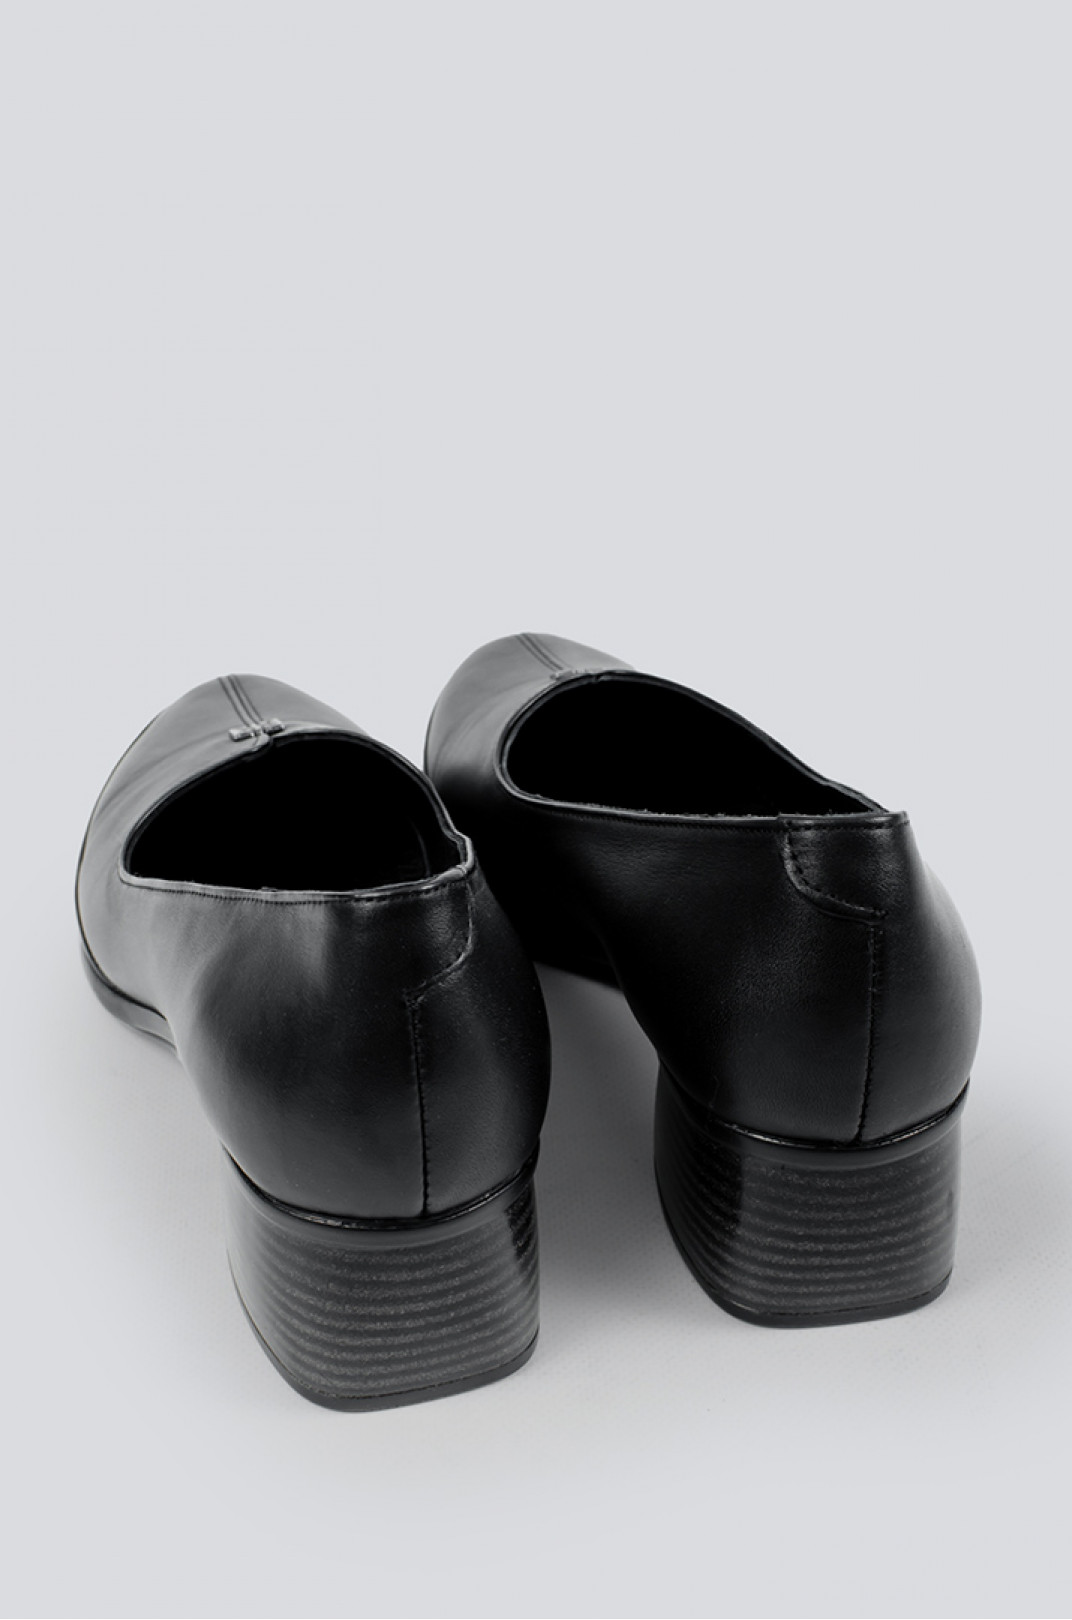 Туфли черные на каблуке больших размеров